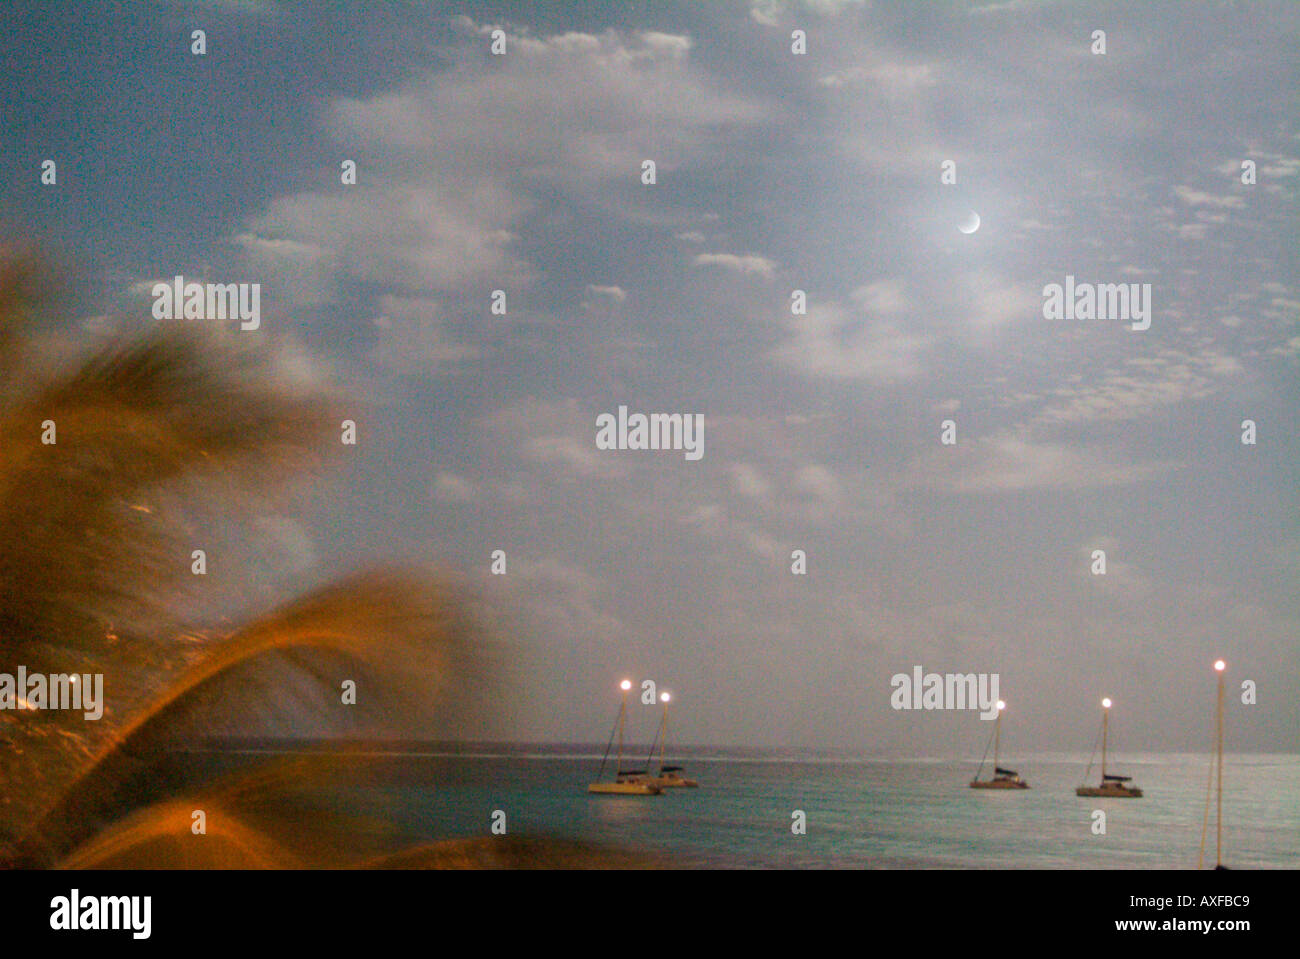 Chiaro di luna su una spiaggia caraibica come visto da un hotel balcone. Barche a vela con la loro testa del montante di luce può essere visto Foto Stock